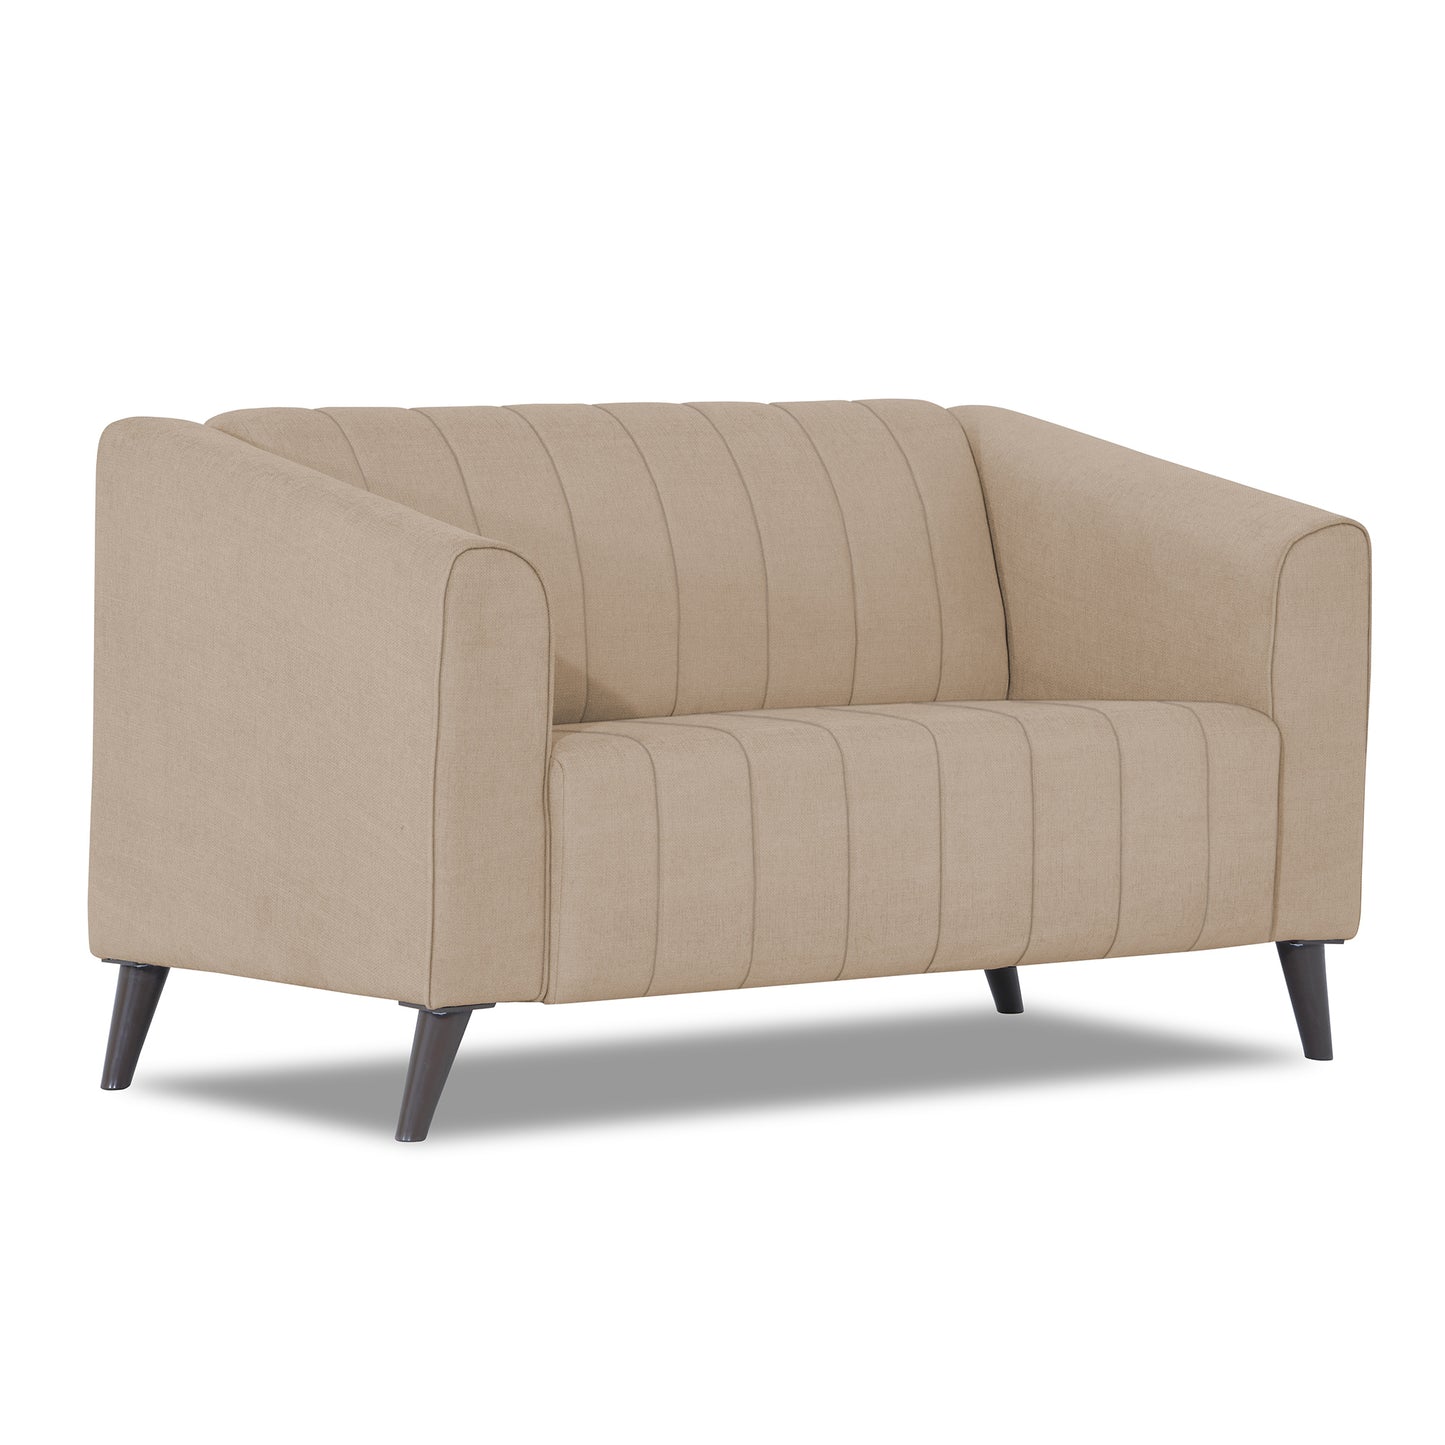 Adorn India Premium Laurel 2 Seater Sofa (Beige)